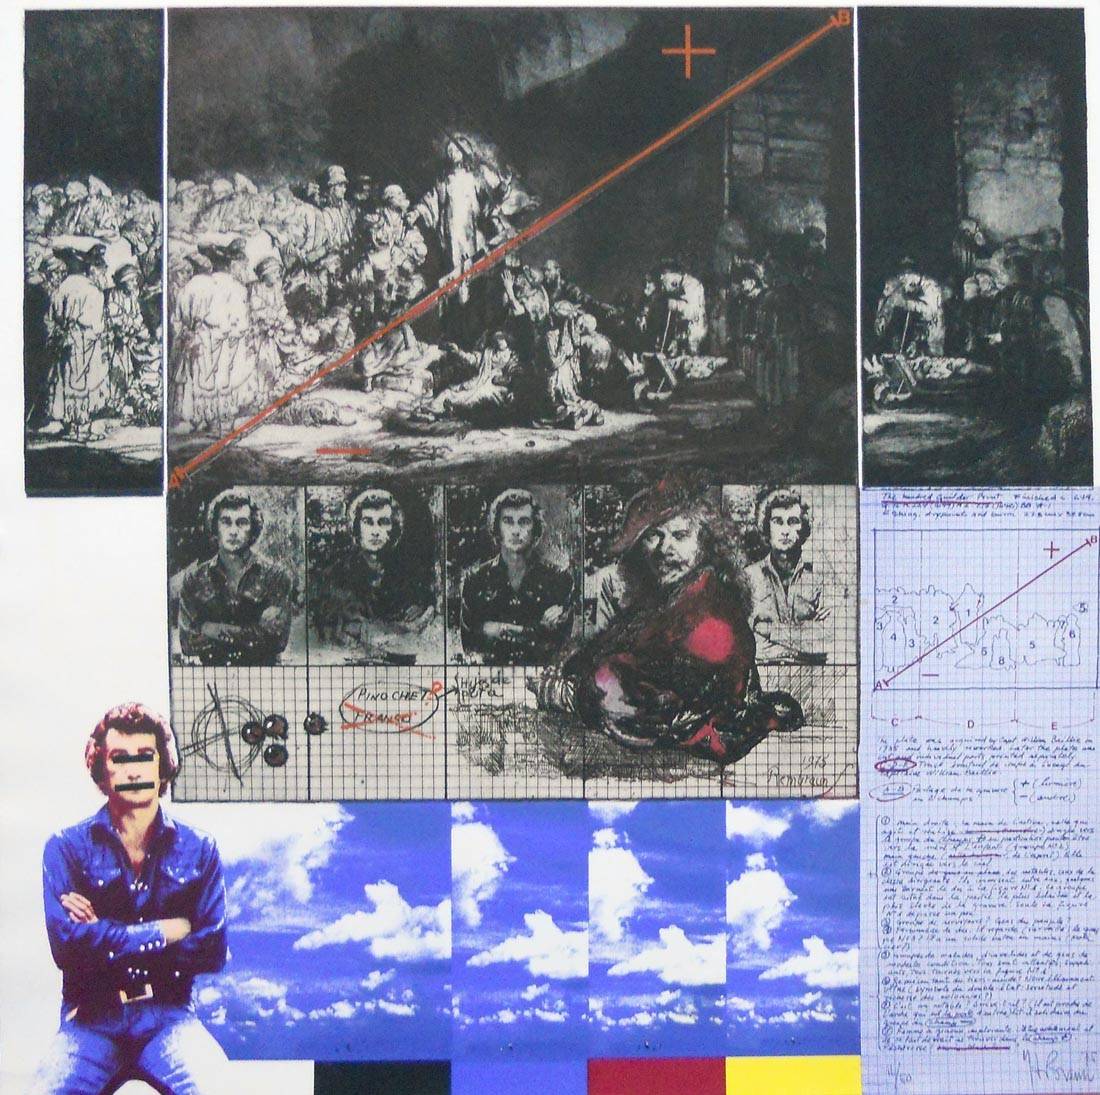 Agresiones, mutilaciones y falsificaciones, 1975. Herman Braun Vega (1933-2019). Fotograbado y serigrafía.  72 x 72 cm. Nº inv. 4017.